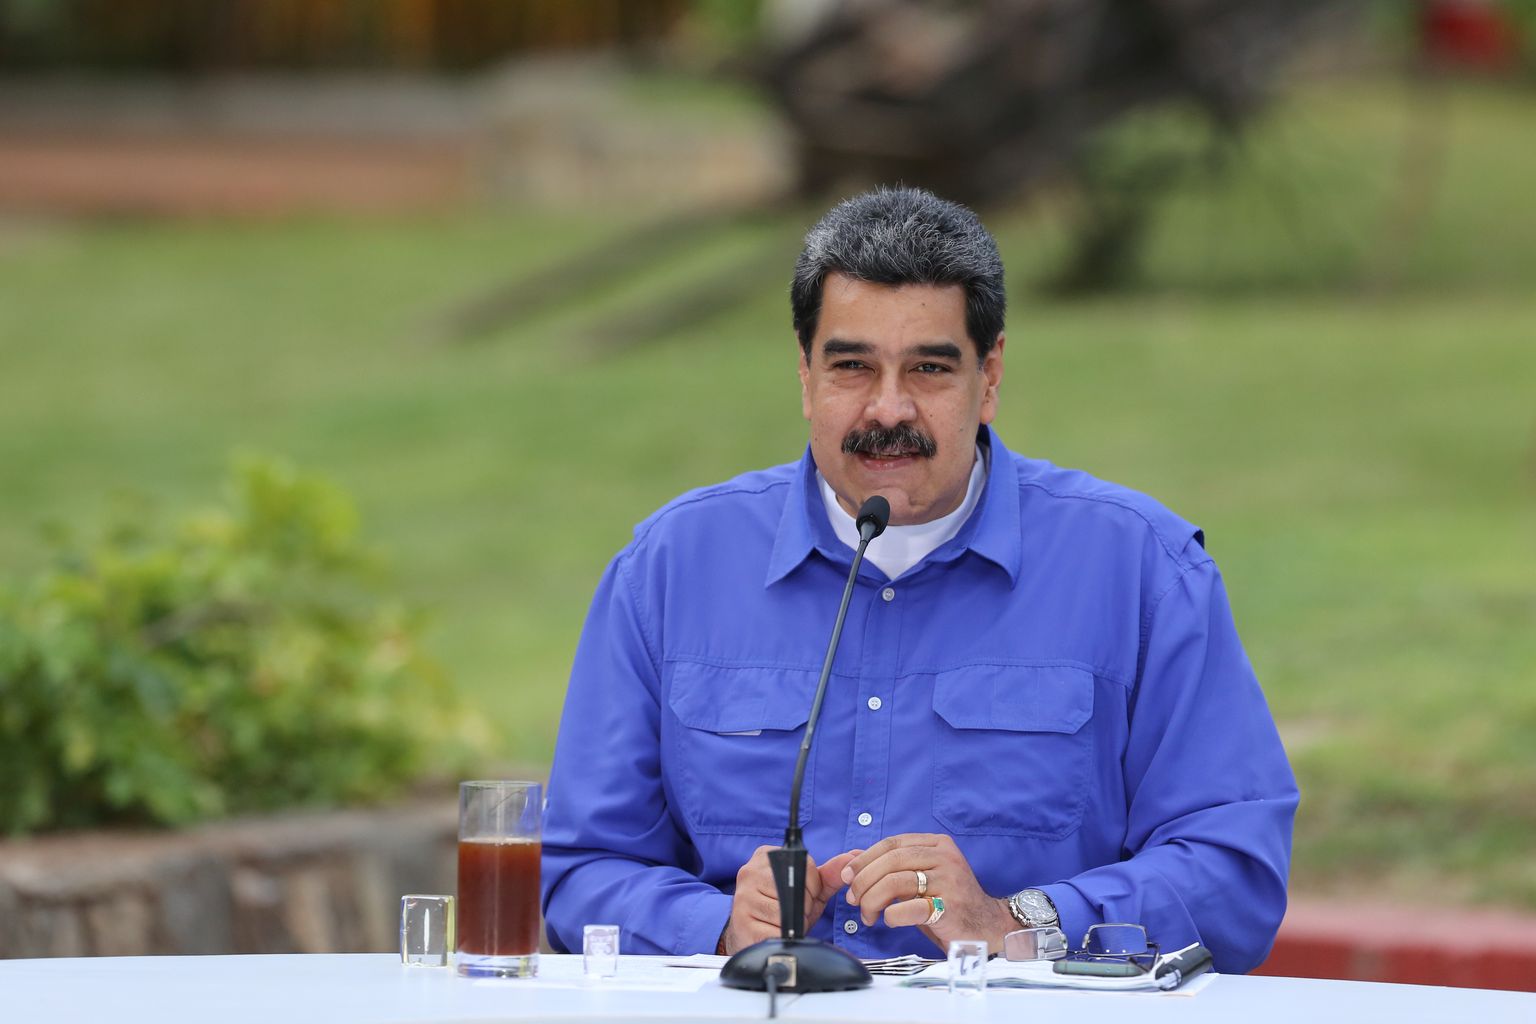 President Nicolas Maduro.